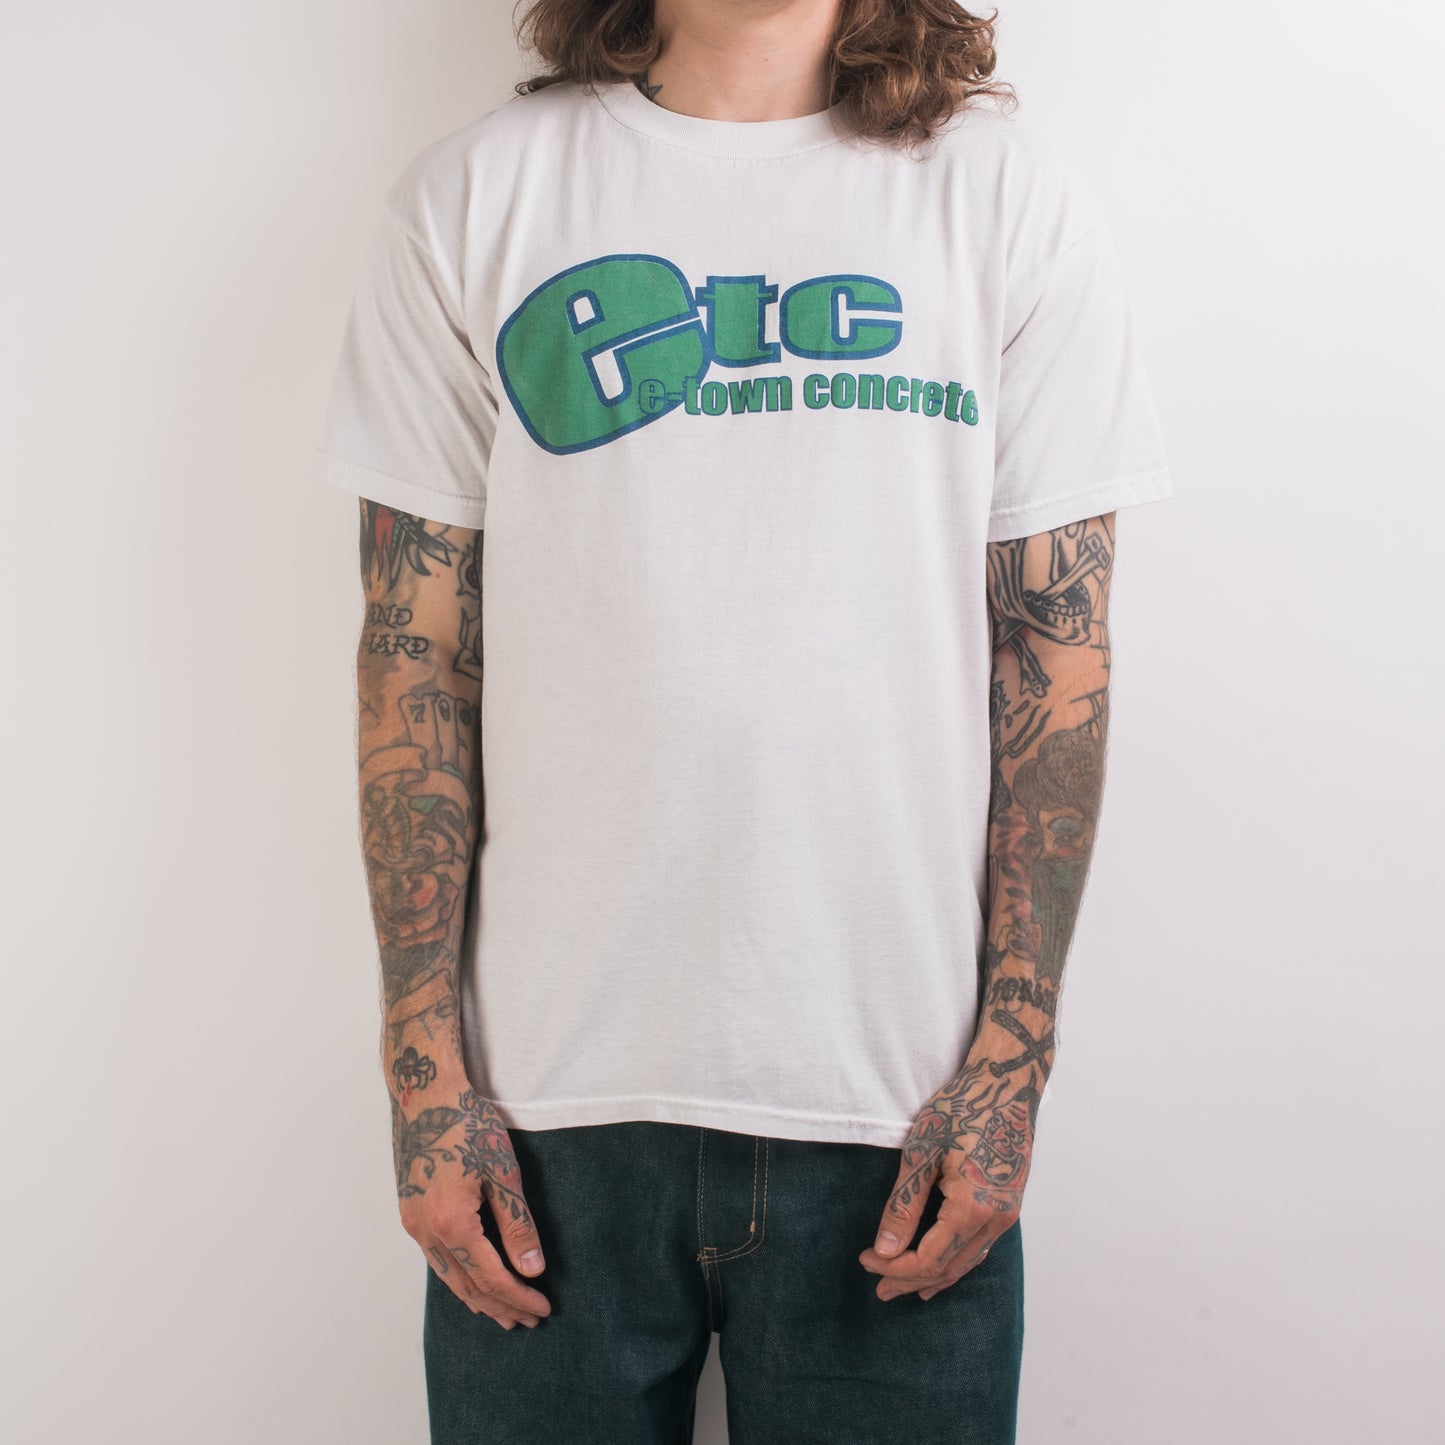 Vintage 90’s E-Town Concrete T-Shirt